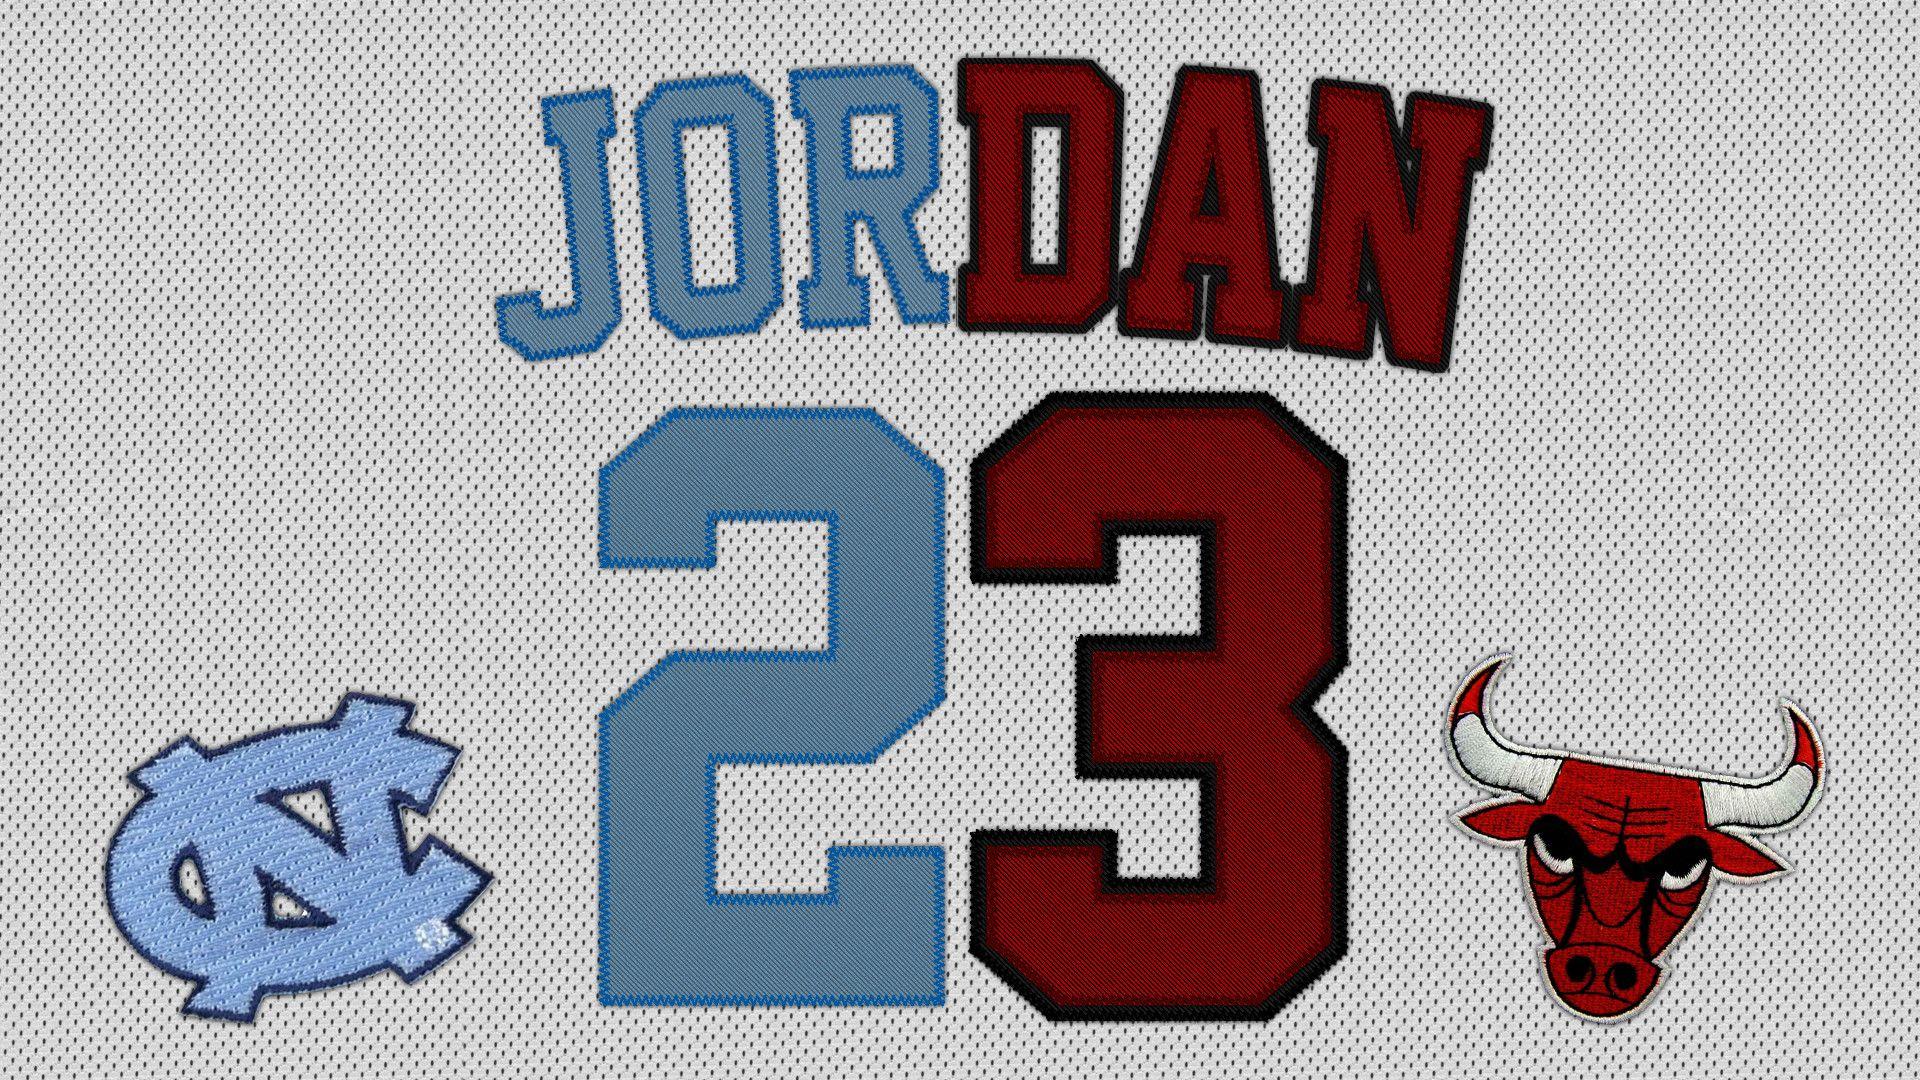 Bull Jordan 23 Logo - Jordan 23 Wallpaper ·①